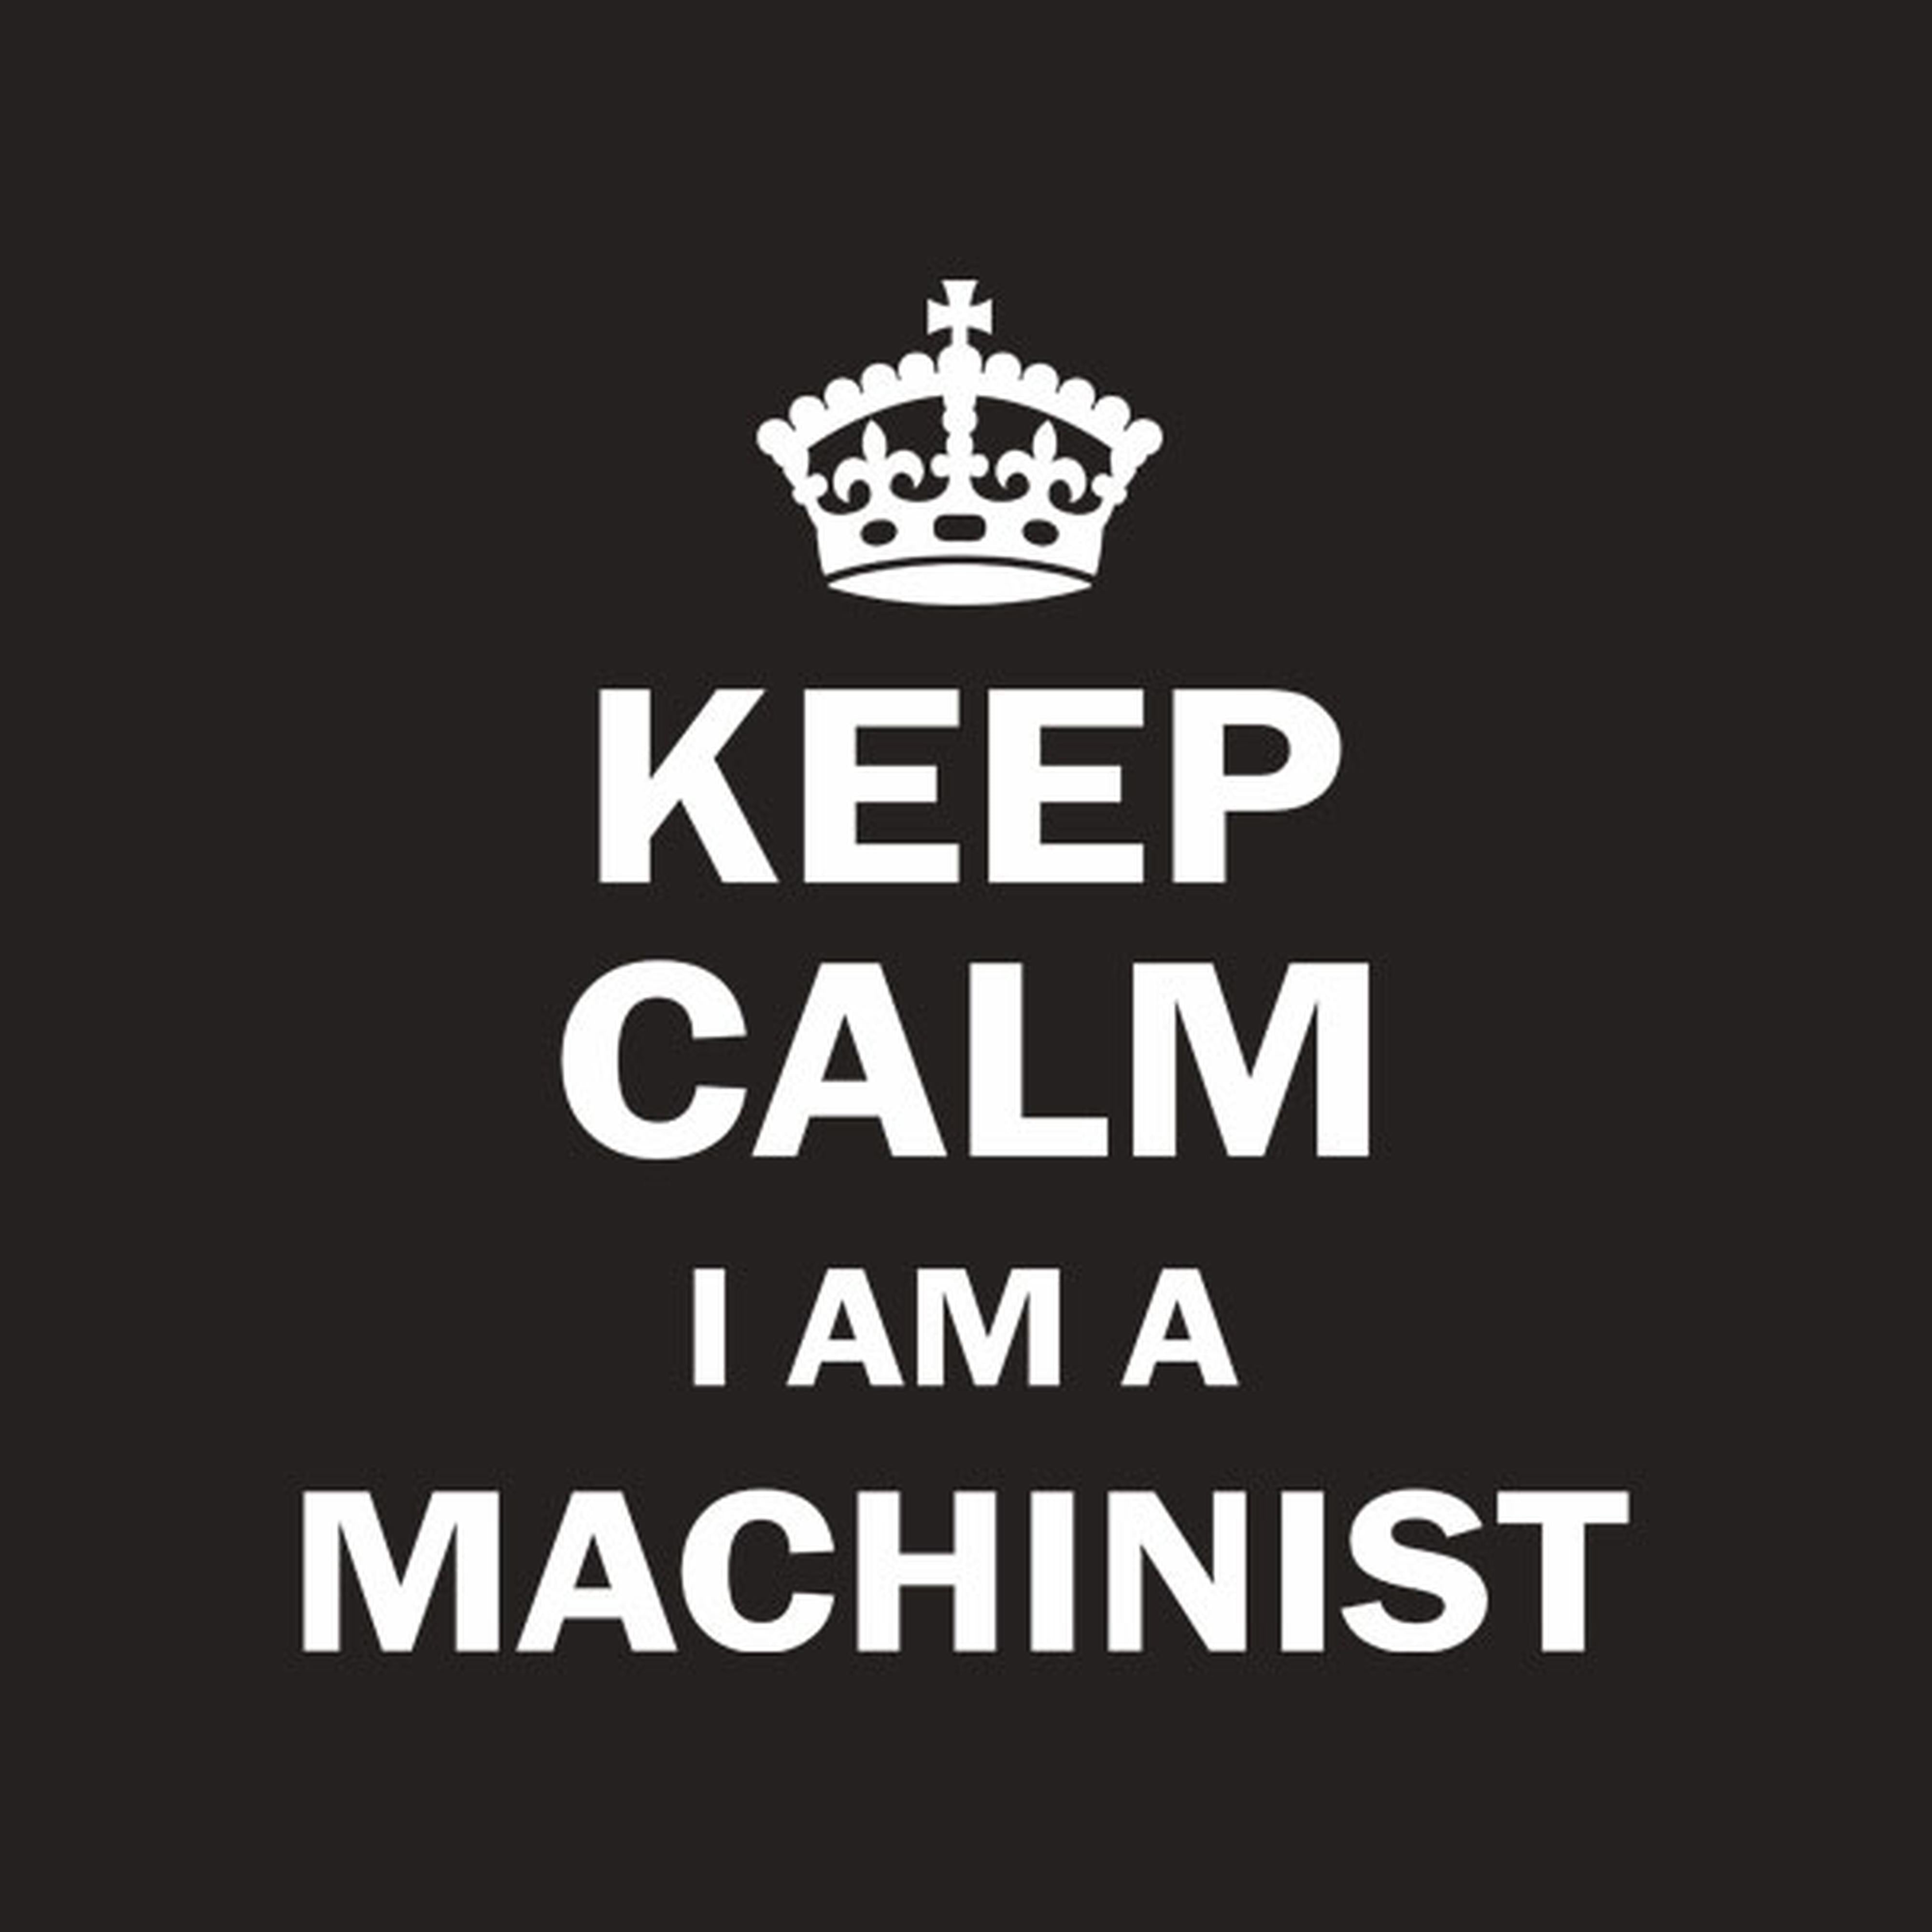 Keep calm I am a machinist - T-shirt